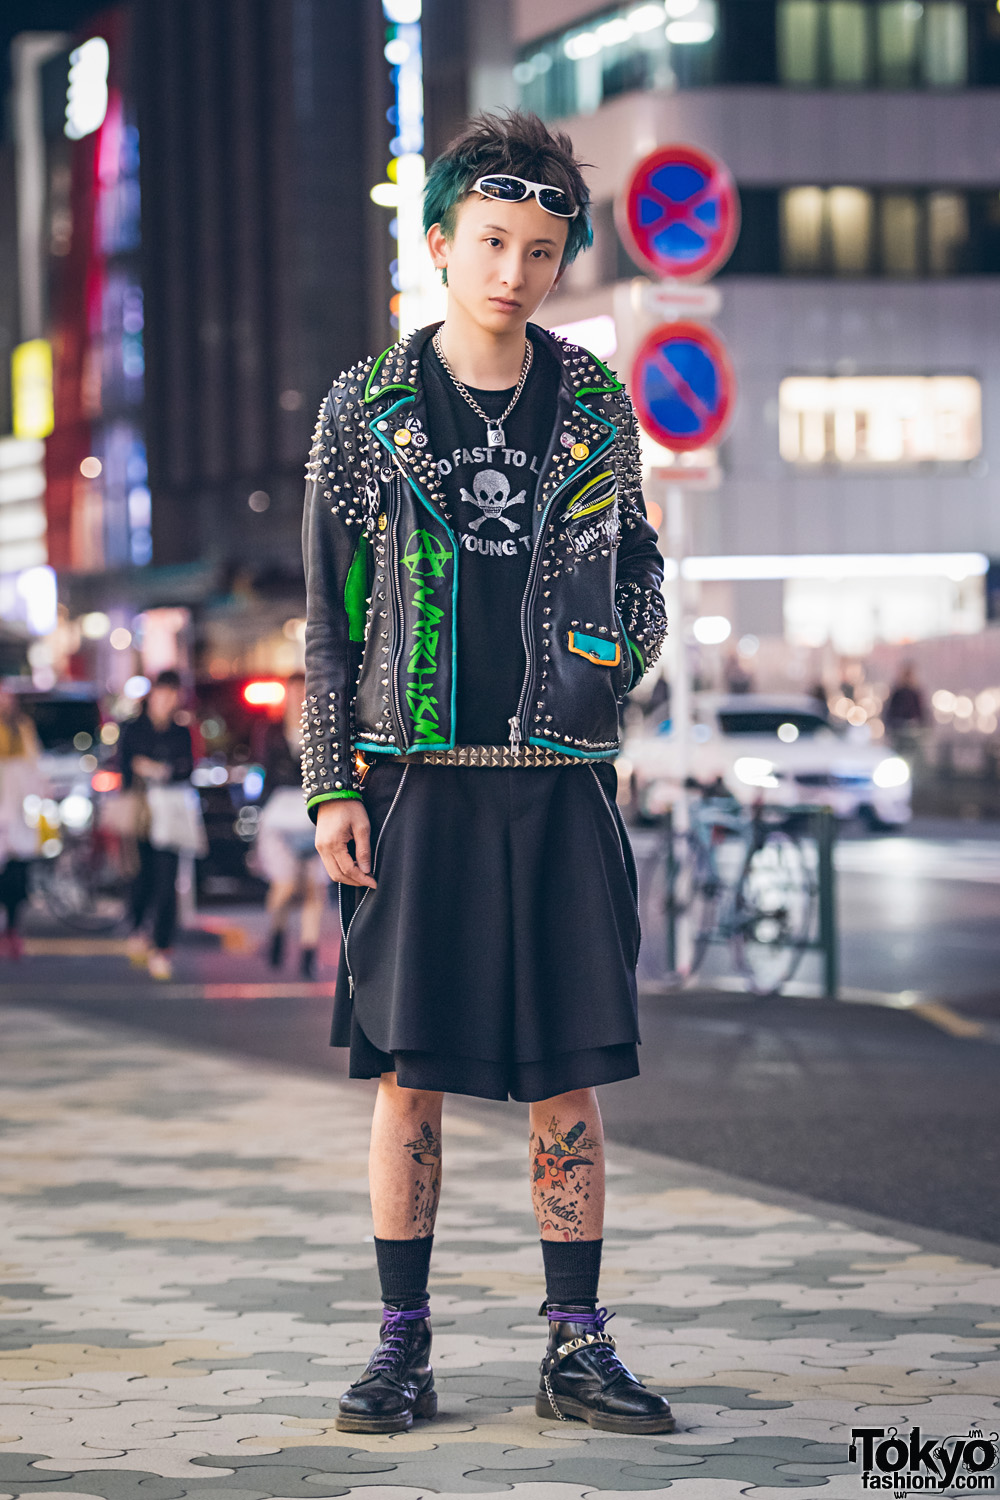 Harajuku Punk in Studded Leather Jacket, 